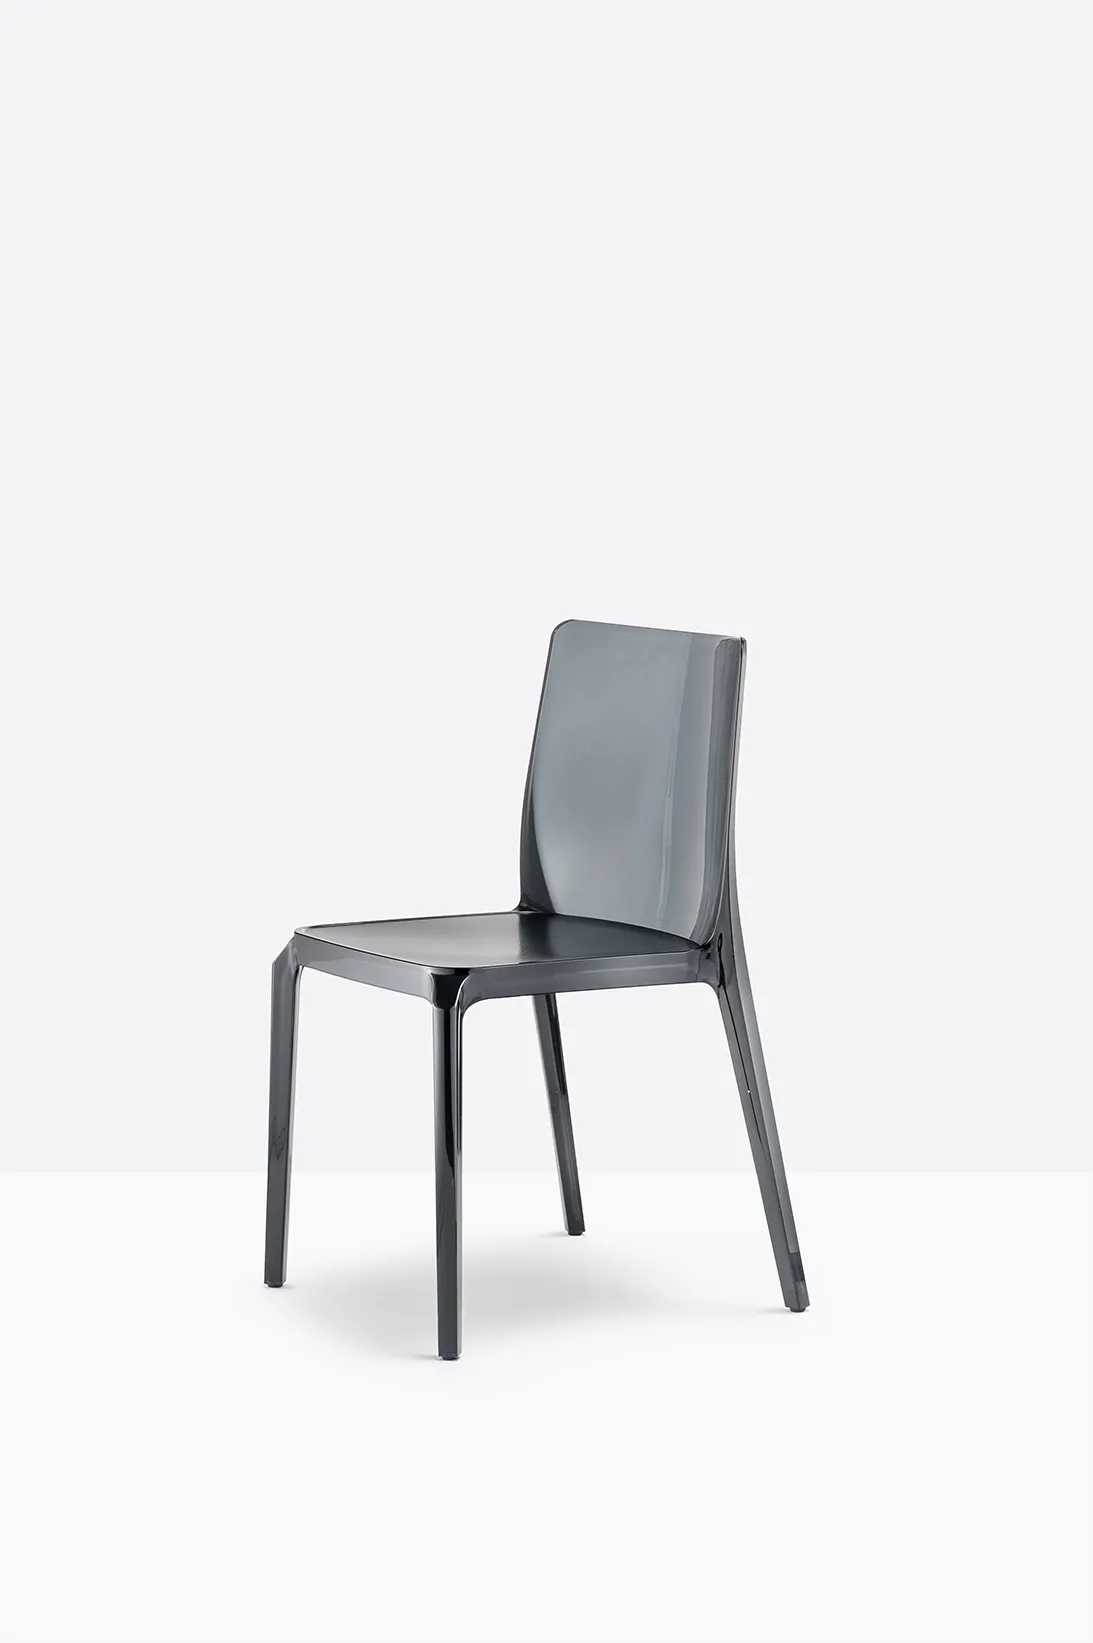 Stuhl BLITZ 640 - Stapelstuhl von Pedrali FU - rauchgrau transparent